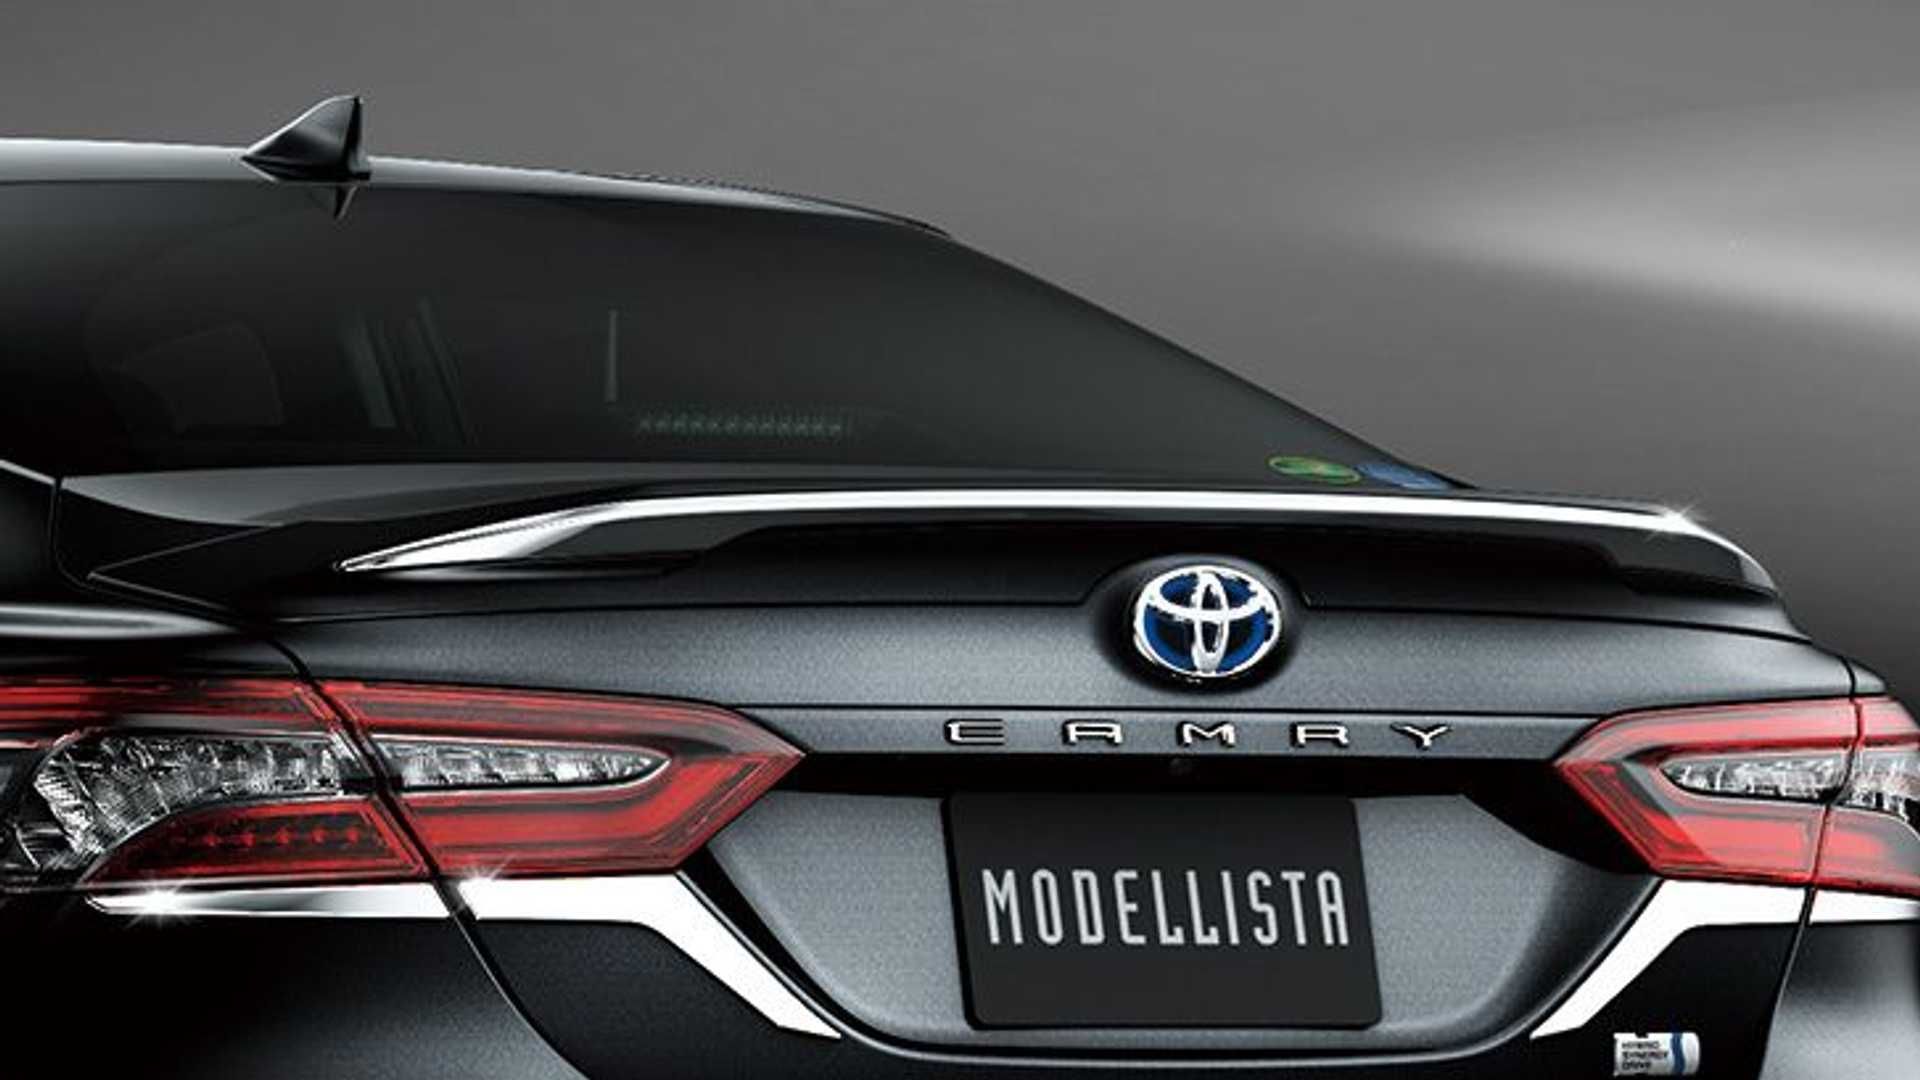 نمای عقب سدان تویوتا کمری مدلیستا / Toyota Camry Modellista sedan  خاکستری رنگ